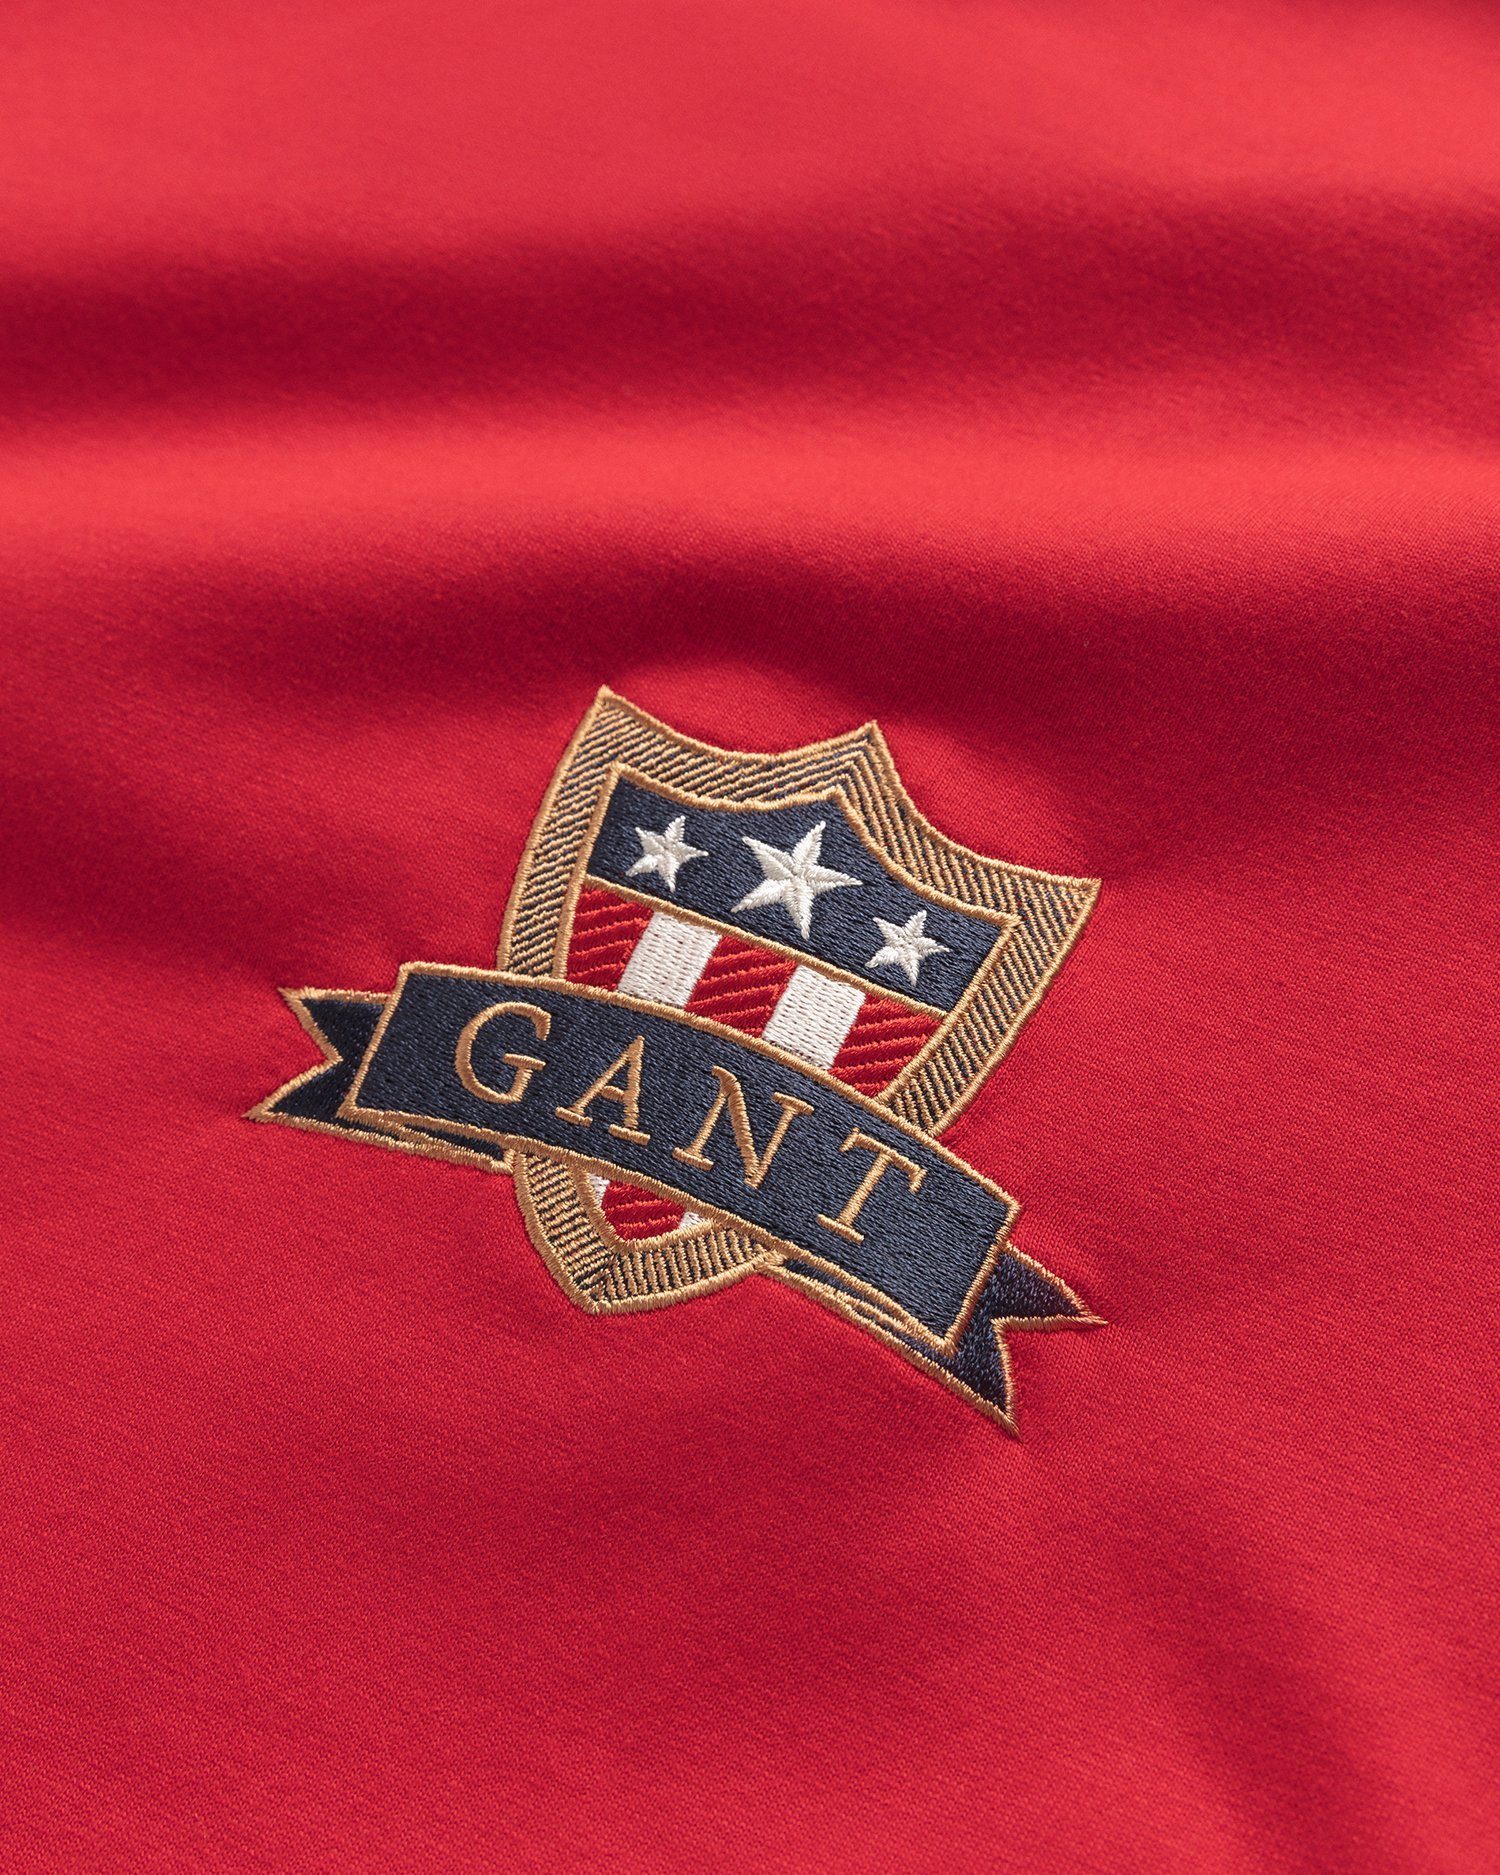 Gant T-Shirt